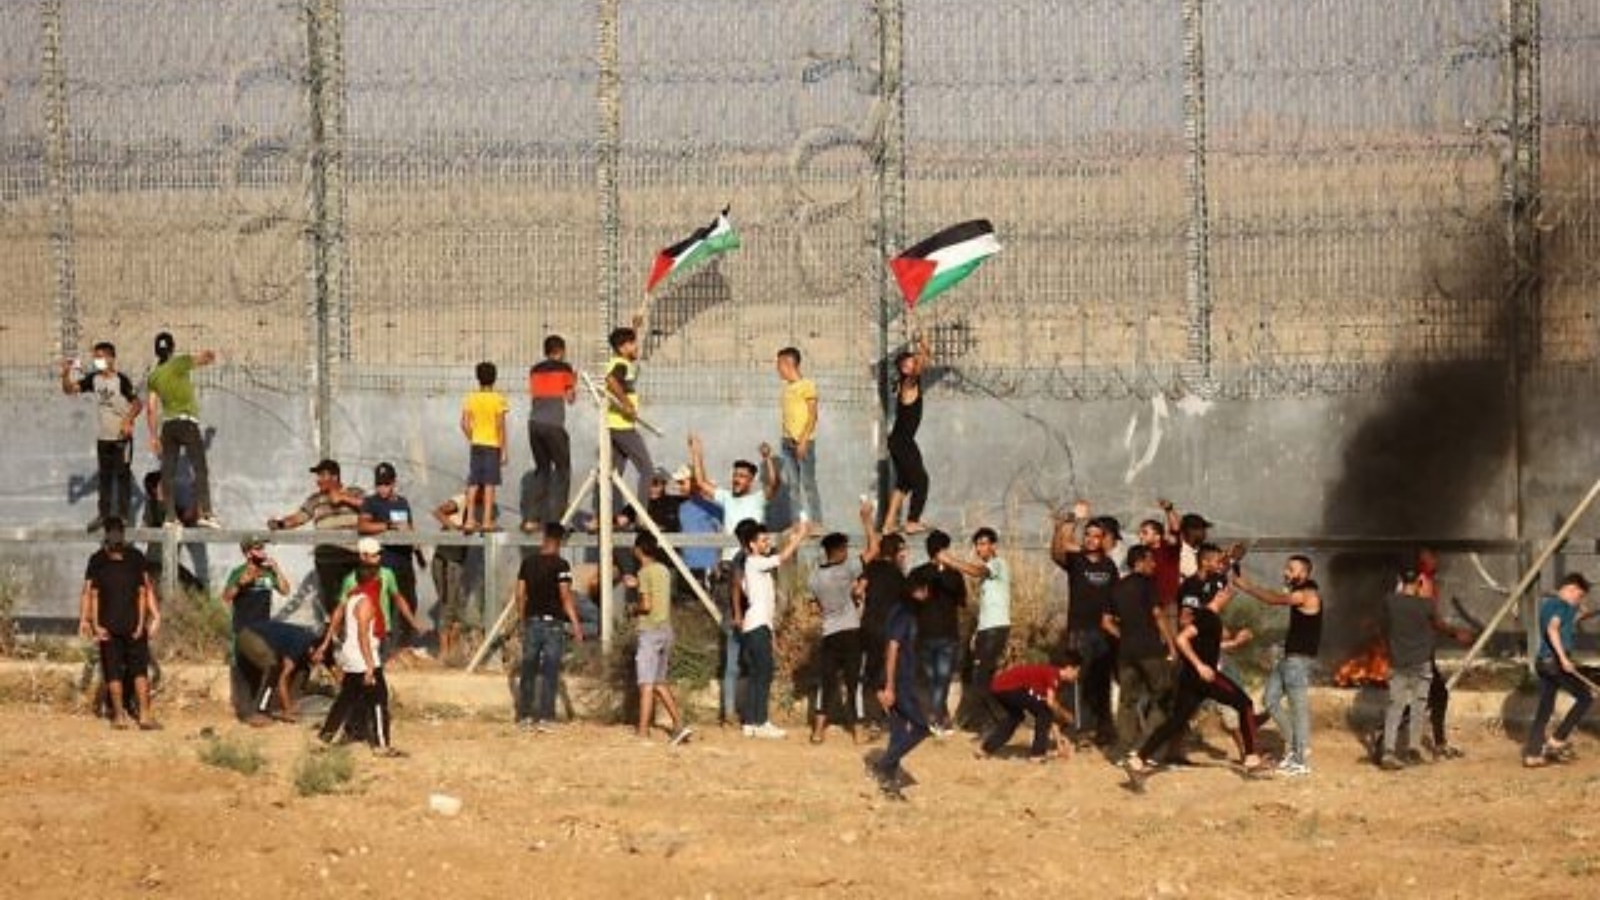 متظاهرون فلسطينيون يرفعون الأعلام الوطنية ويحرقون الإطارات خلال مظاهرة بالقرب من السياج الحدودي مع إسرائيل، شرقي مدينة غزة. بتاريخ 21 آب/ أغسطس 2021